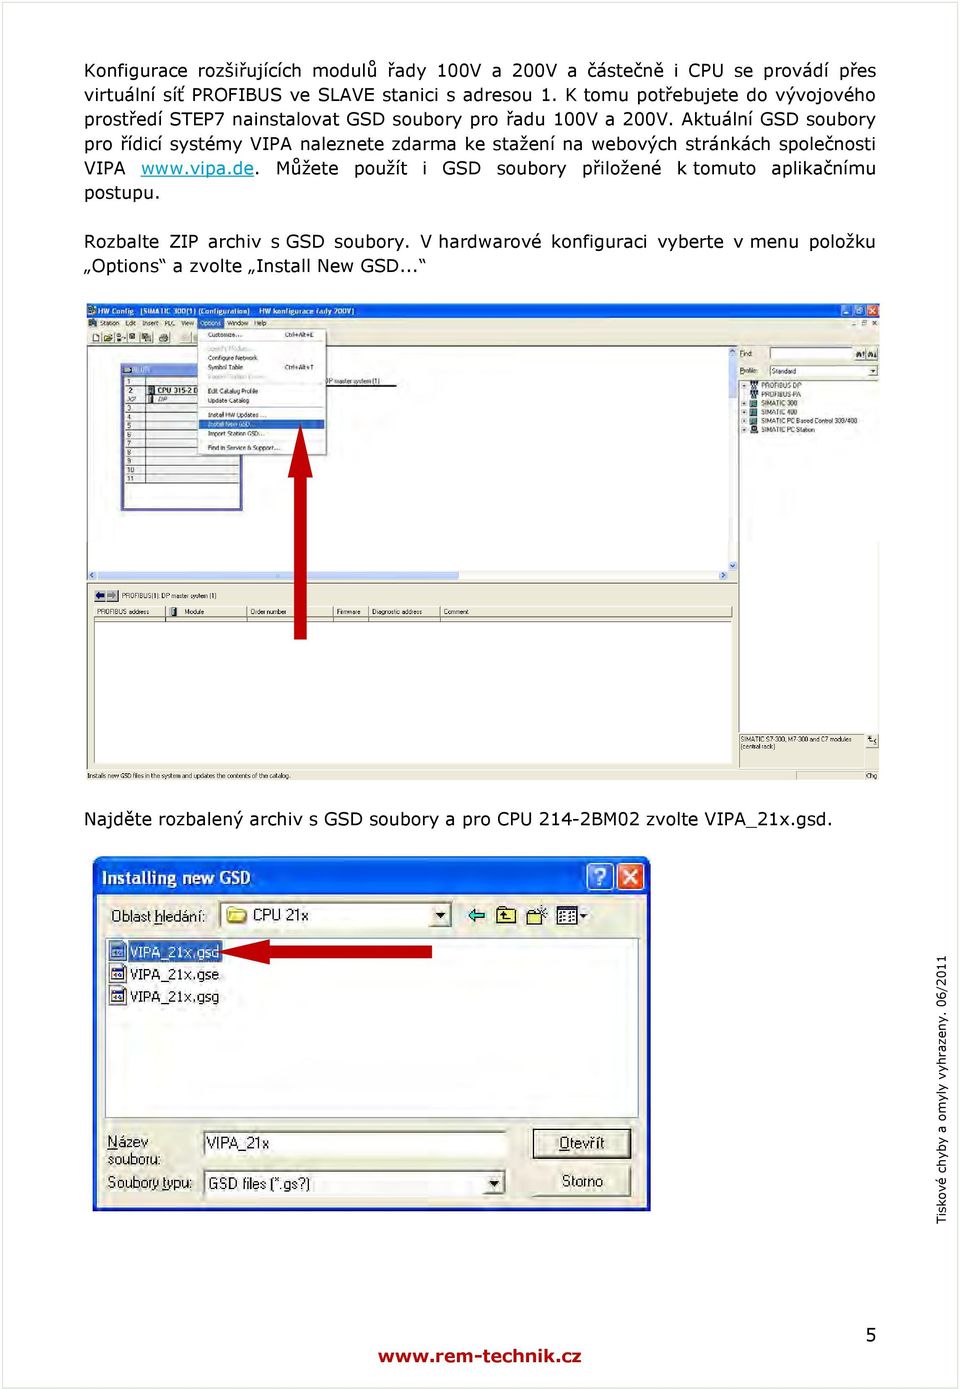 Aktuální GSD soubory pro řídicí systémy VIPA naleznete zdarma ke stažení na webových stránkách společnosti VIPA www.vipa.de.